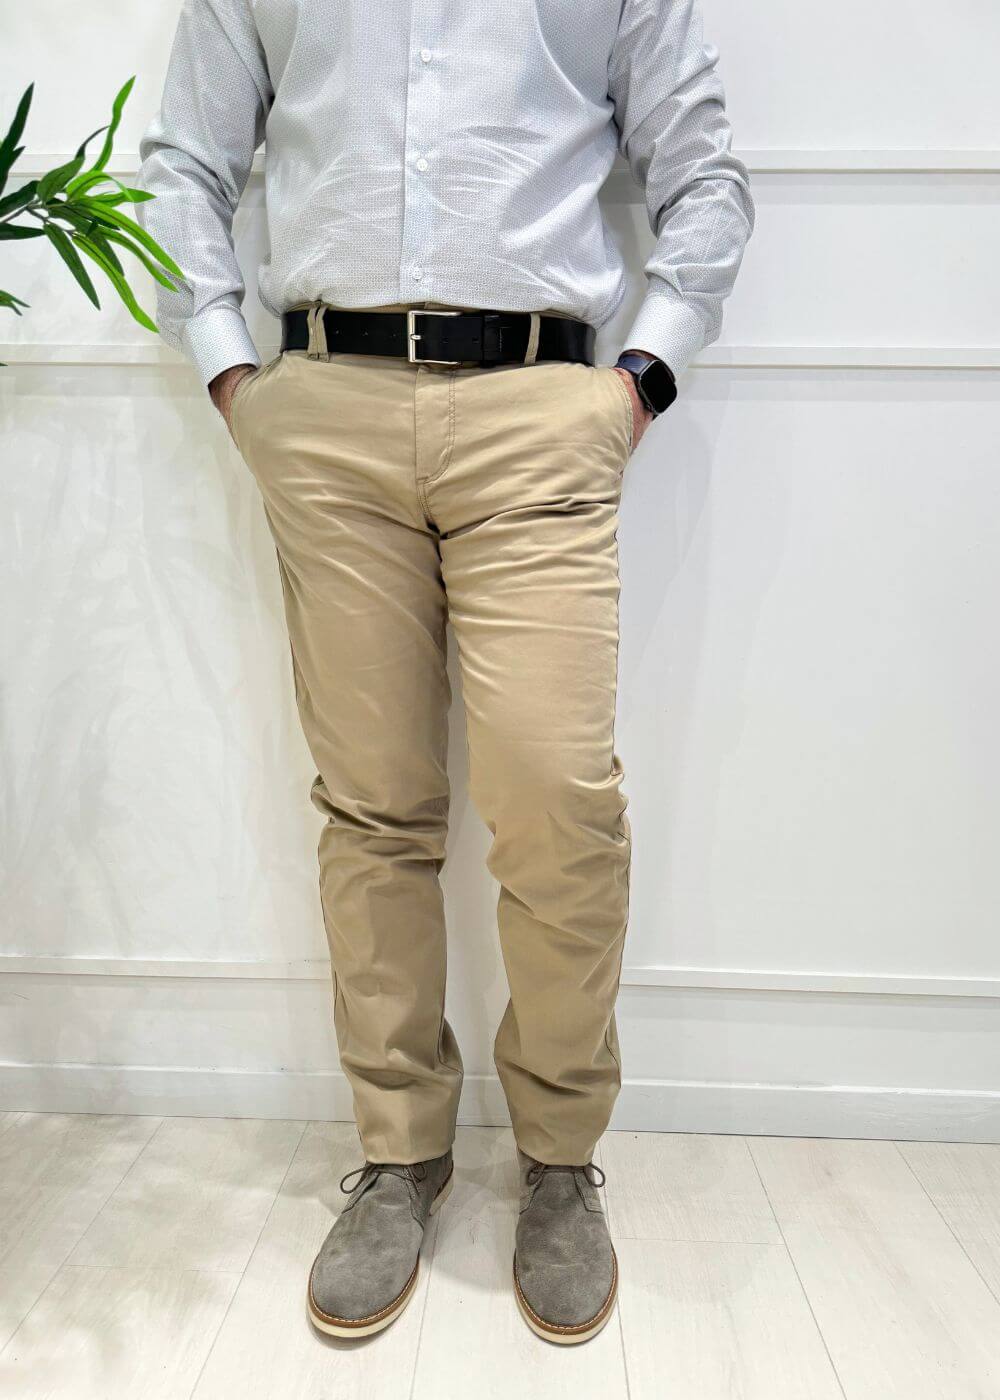 Pantalone tasca classica - BEIGE